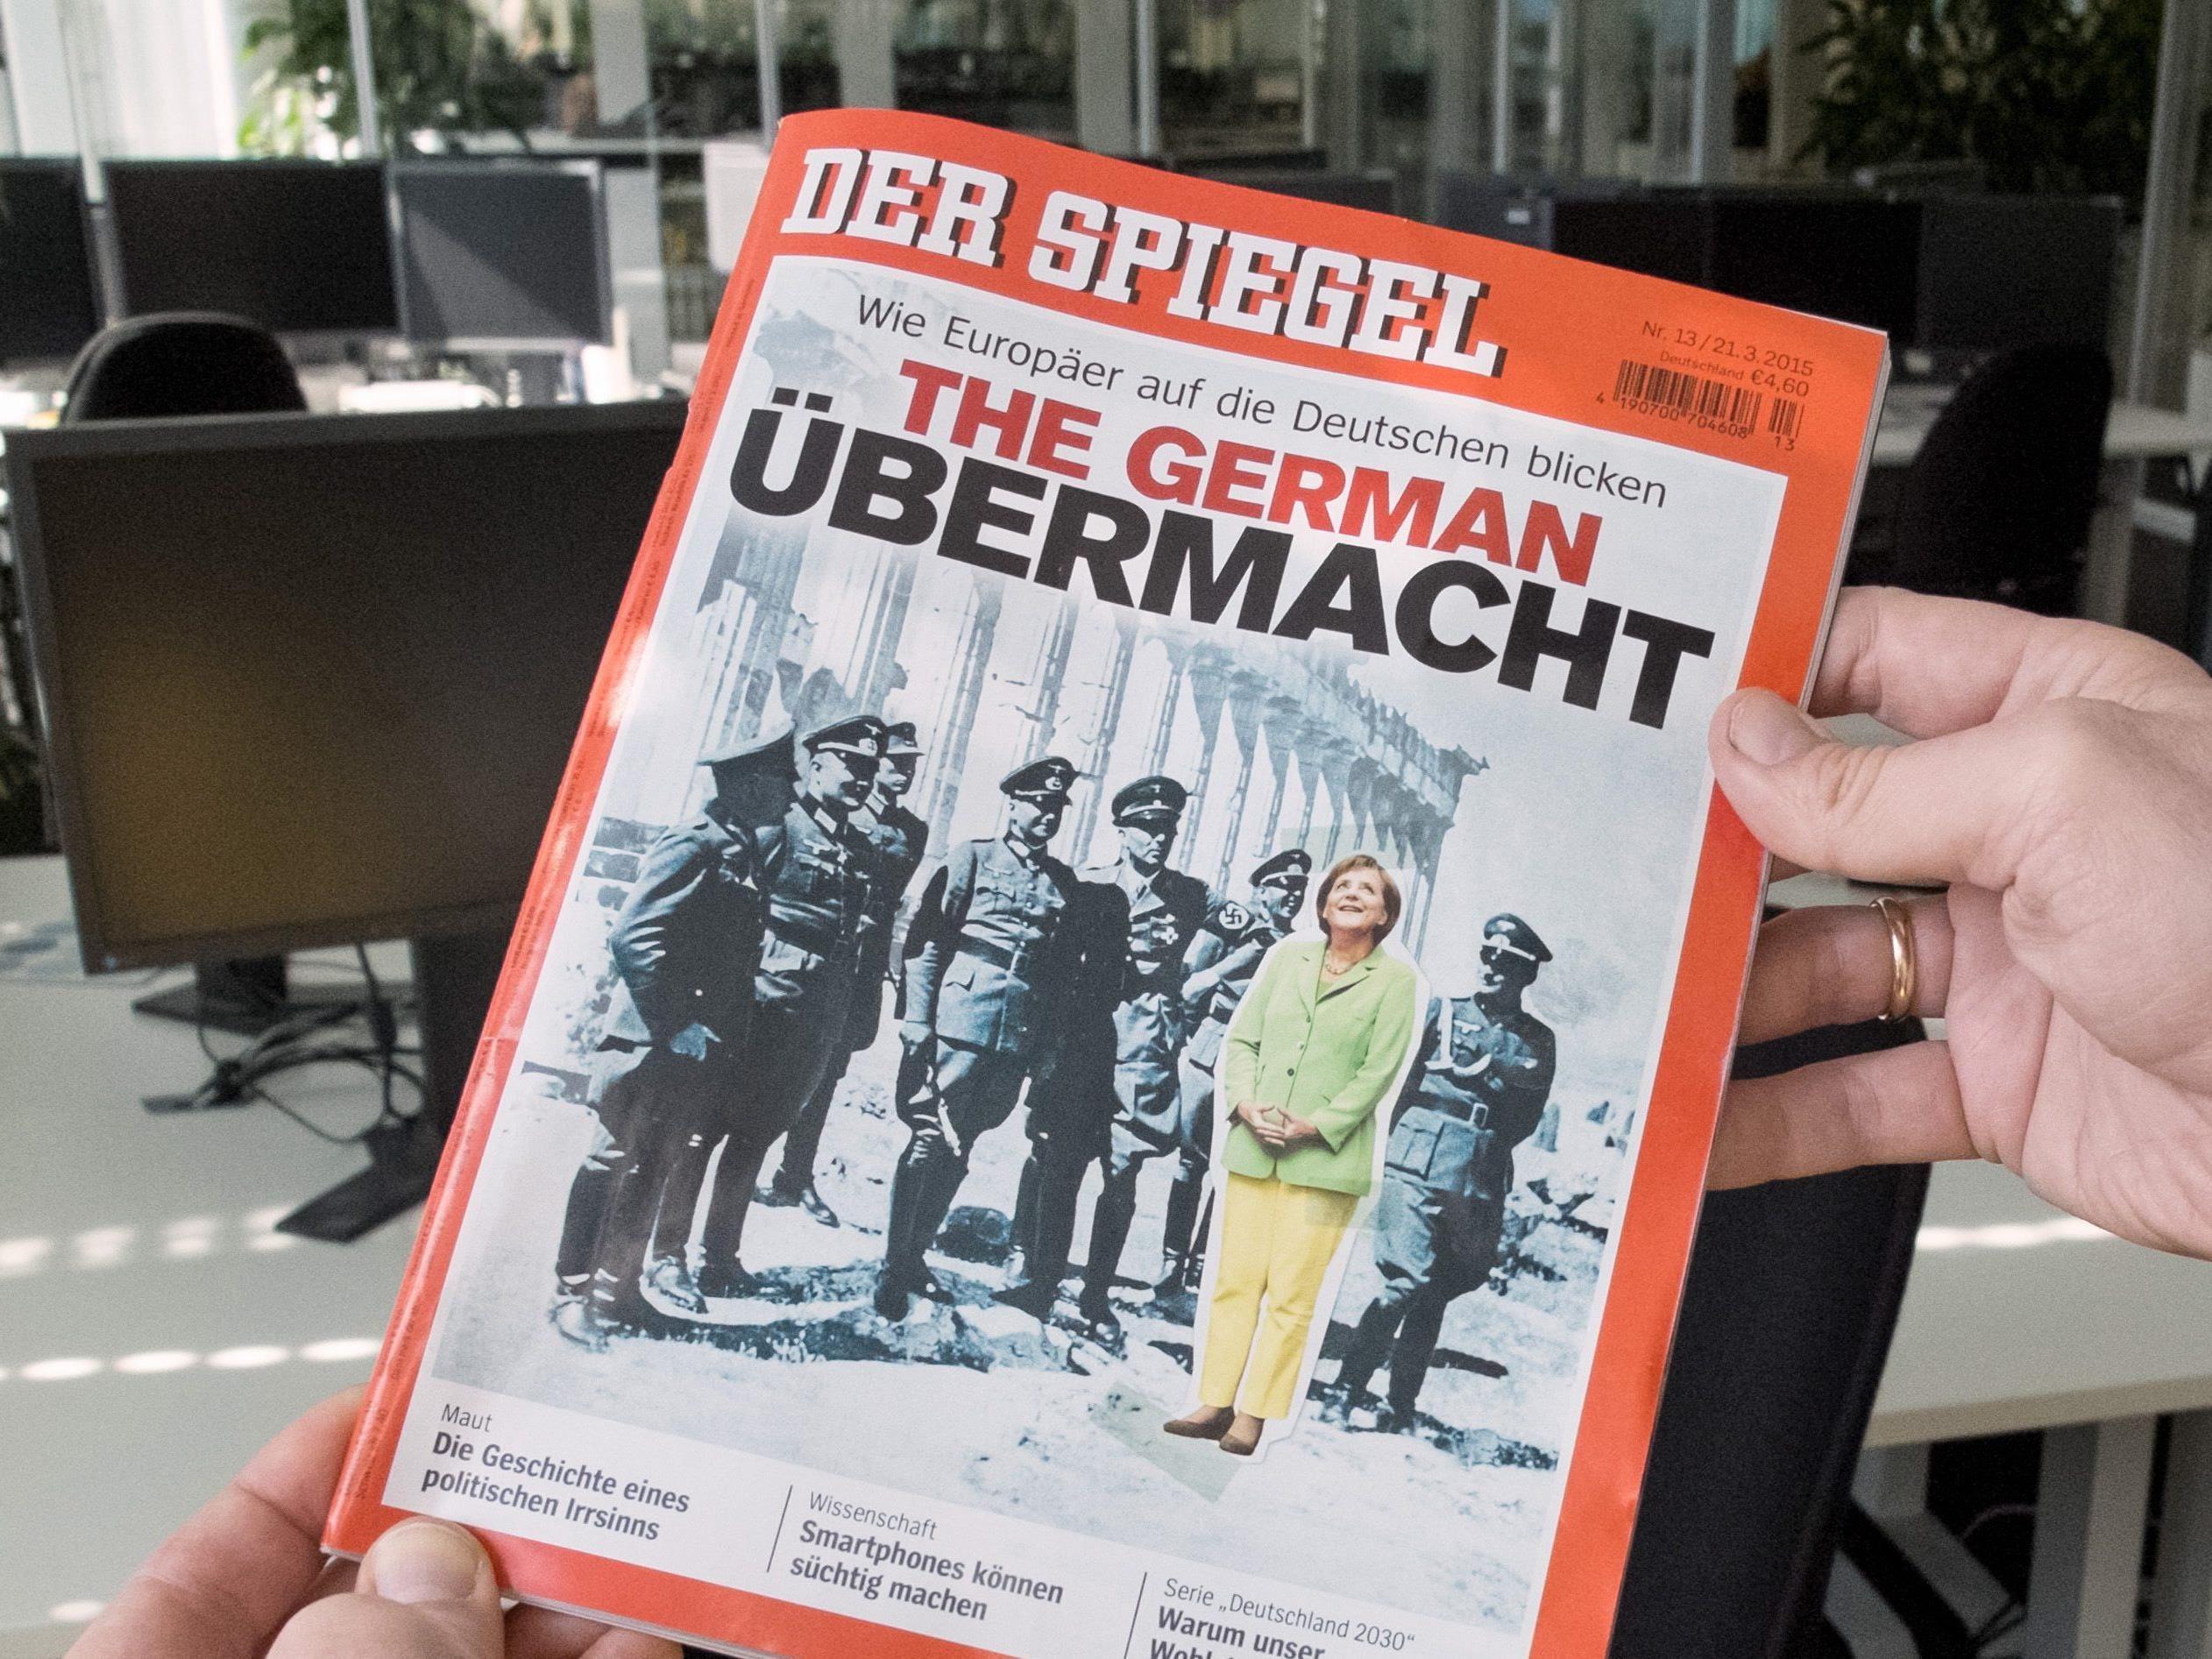 Merkel mit den Nazis auf der Akropolis. Darf der Spiegel das?